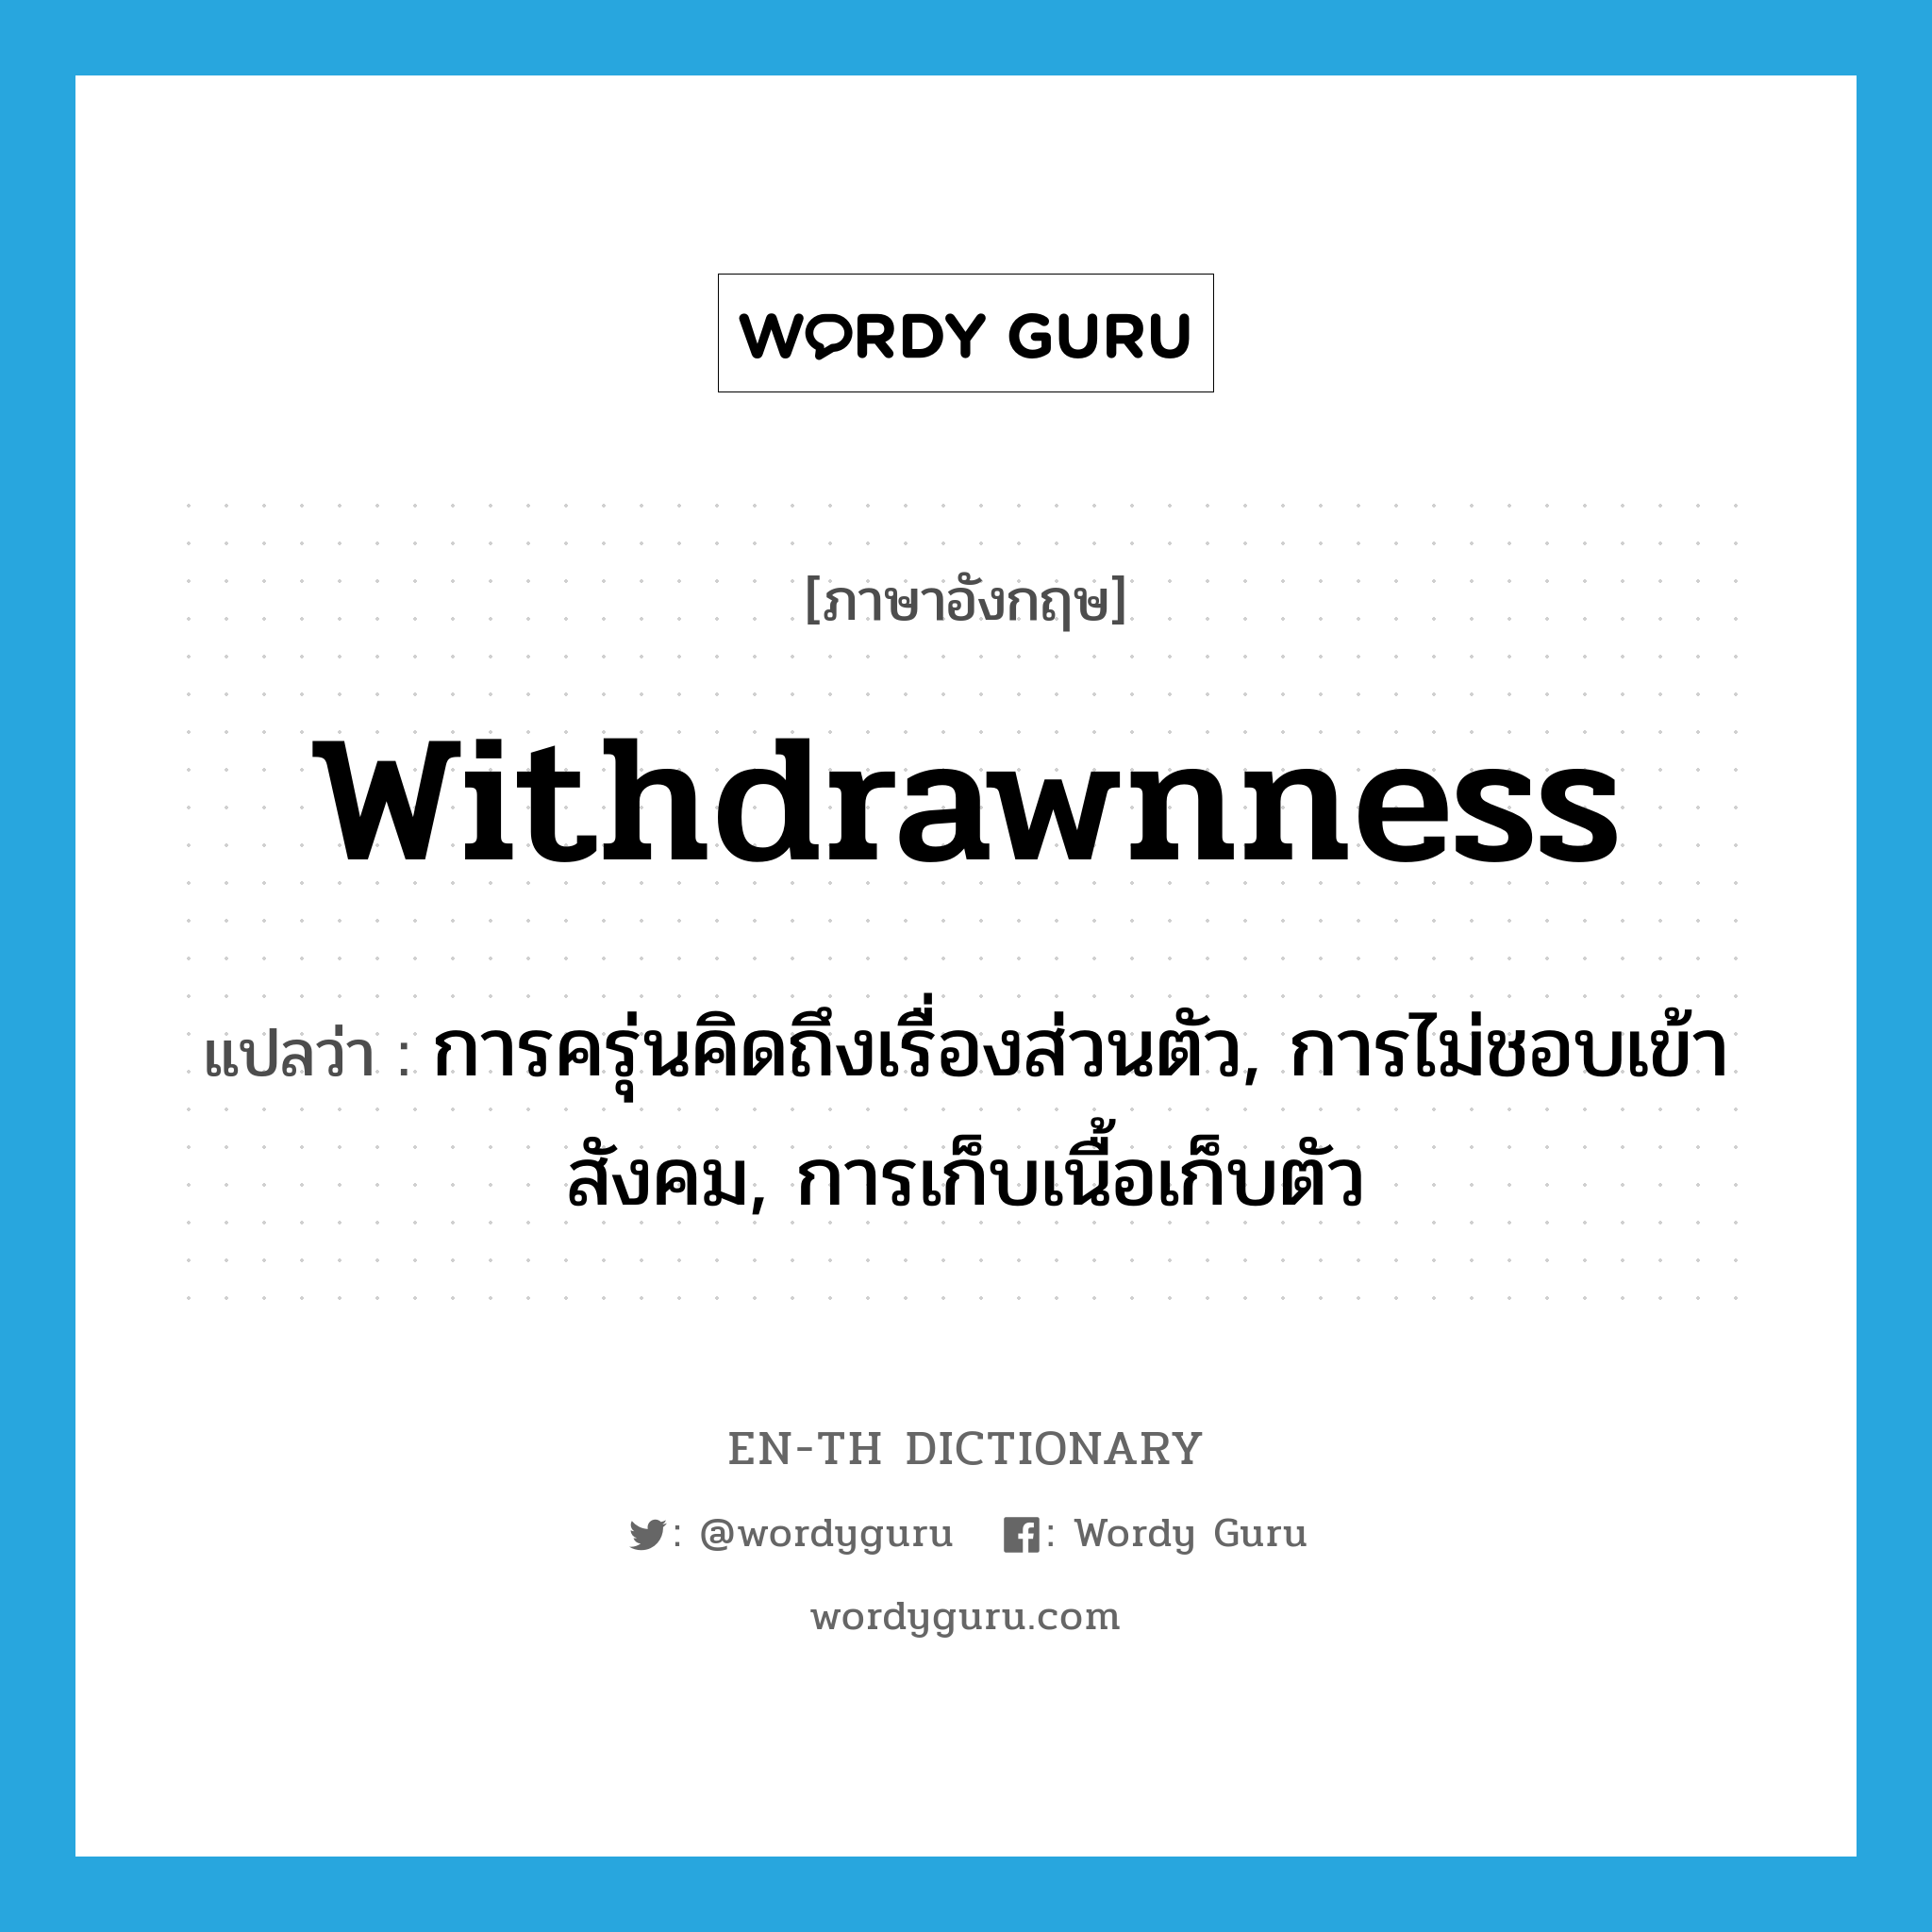 withdrawnness แปลว่า?, คำศัพท์ภาษาอังกฤษ withdrawnness แปลว่า การครุ่นคิดถึงเรื่องส่วนตัว, การไม่ชอบเข้าสังคม, การเก็บเนื้อเก็บตัว ประเภท N หมวด N